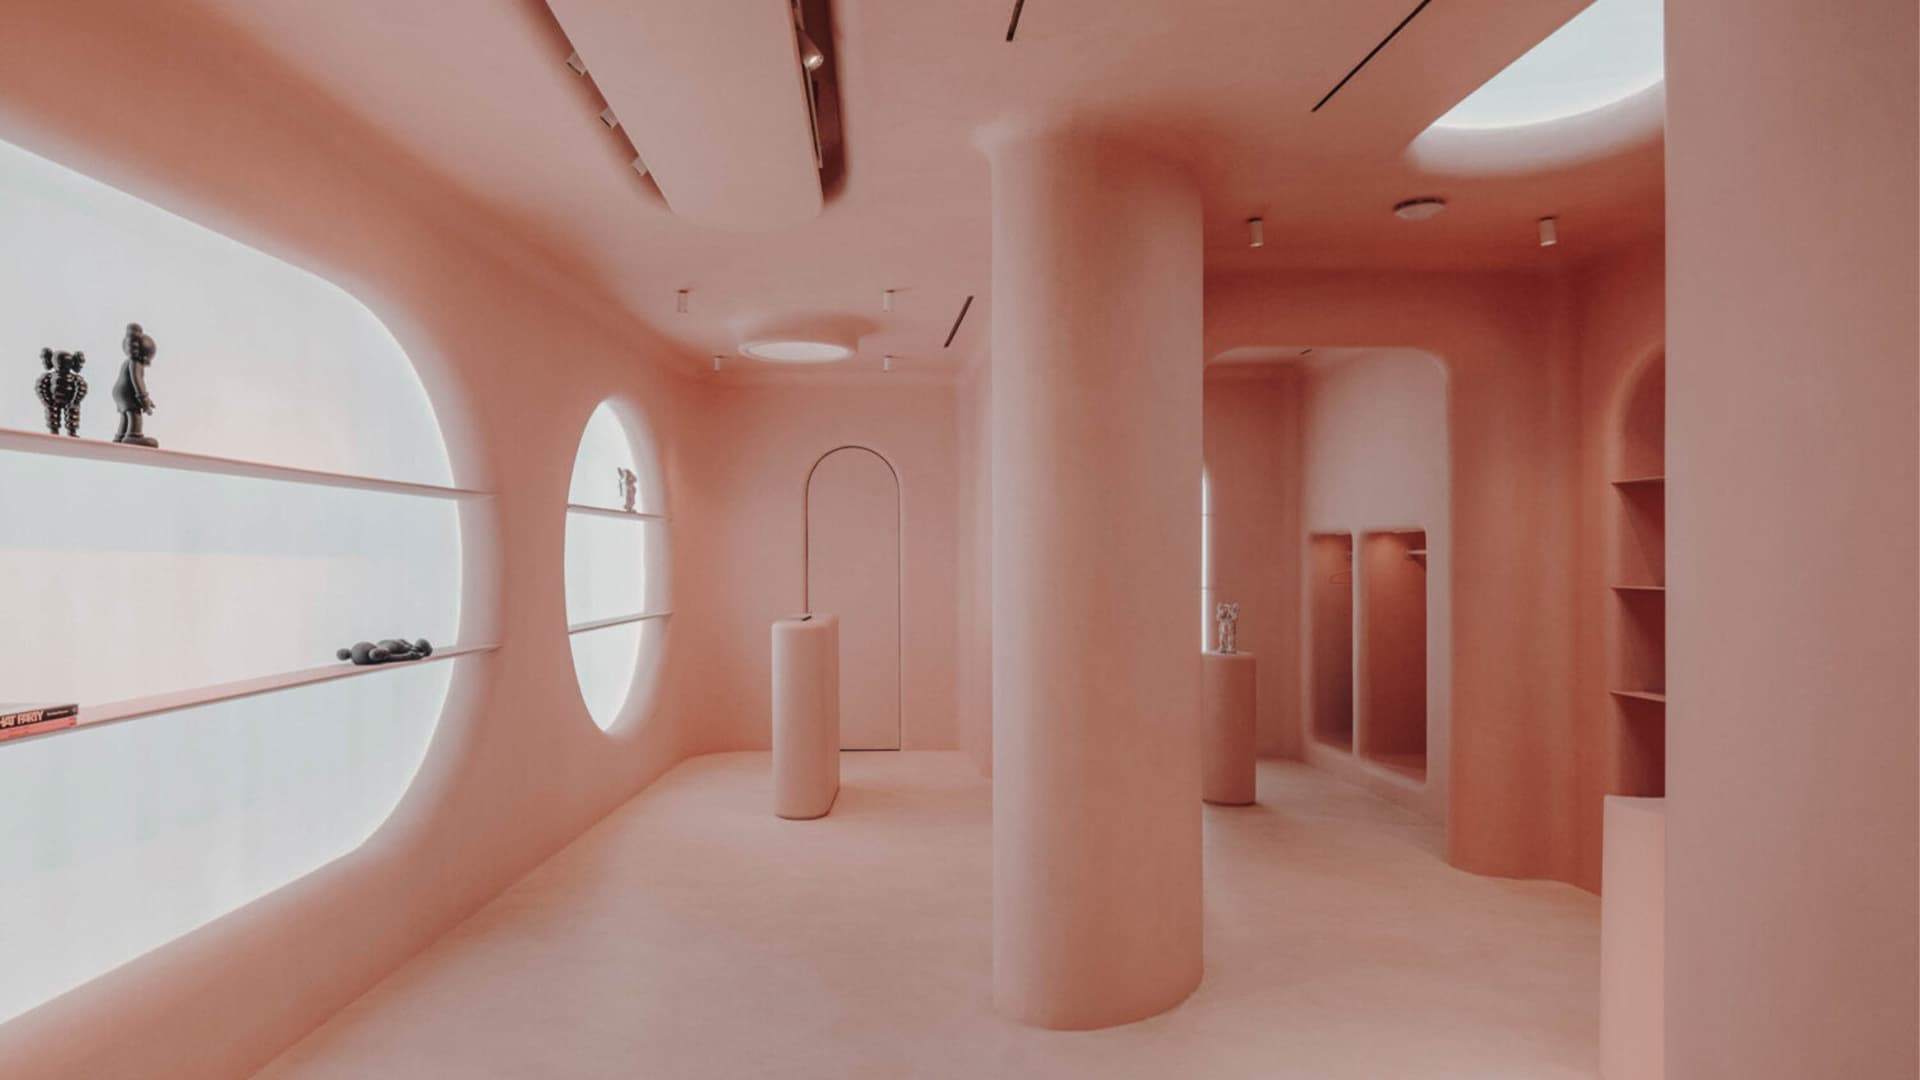 Сквозь розовые очки: фантазийный интерьер концепт-стора в Барселоне — проект Изерна Серры и студии Six N. Five